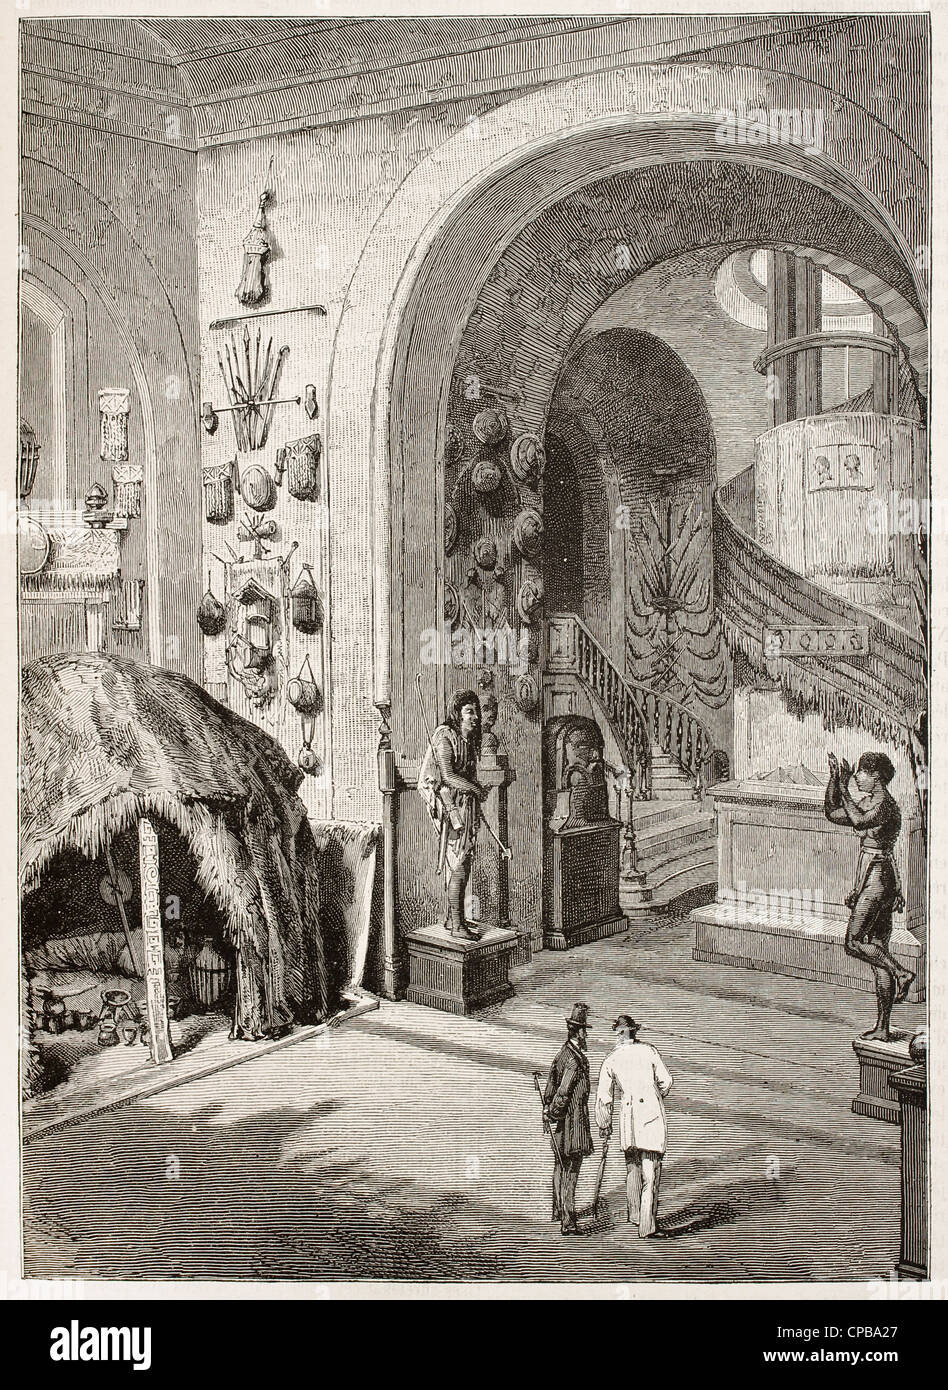 File:Forge à double foyer. Musée de la pince. Montécheroux.jpg